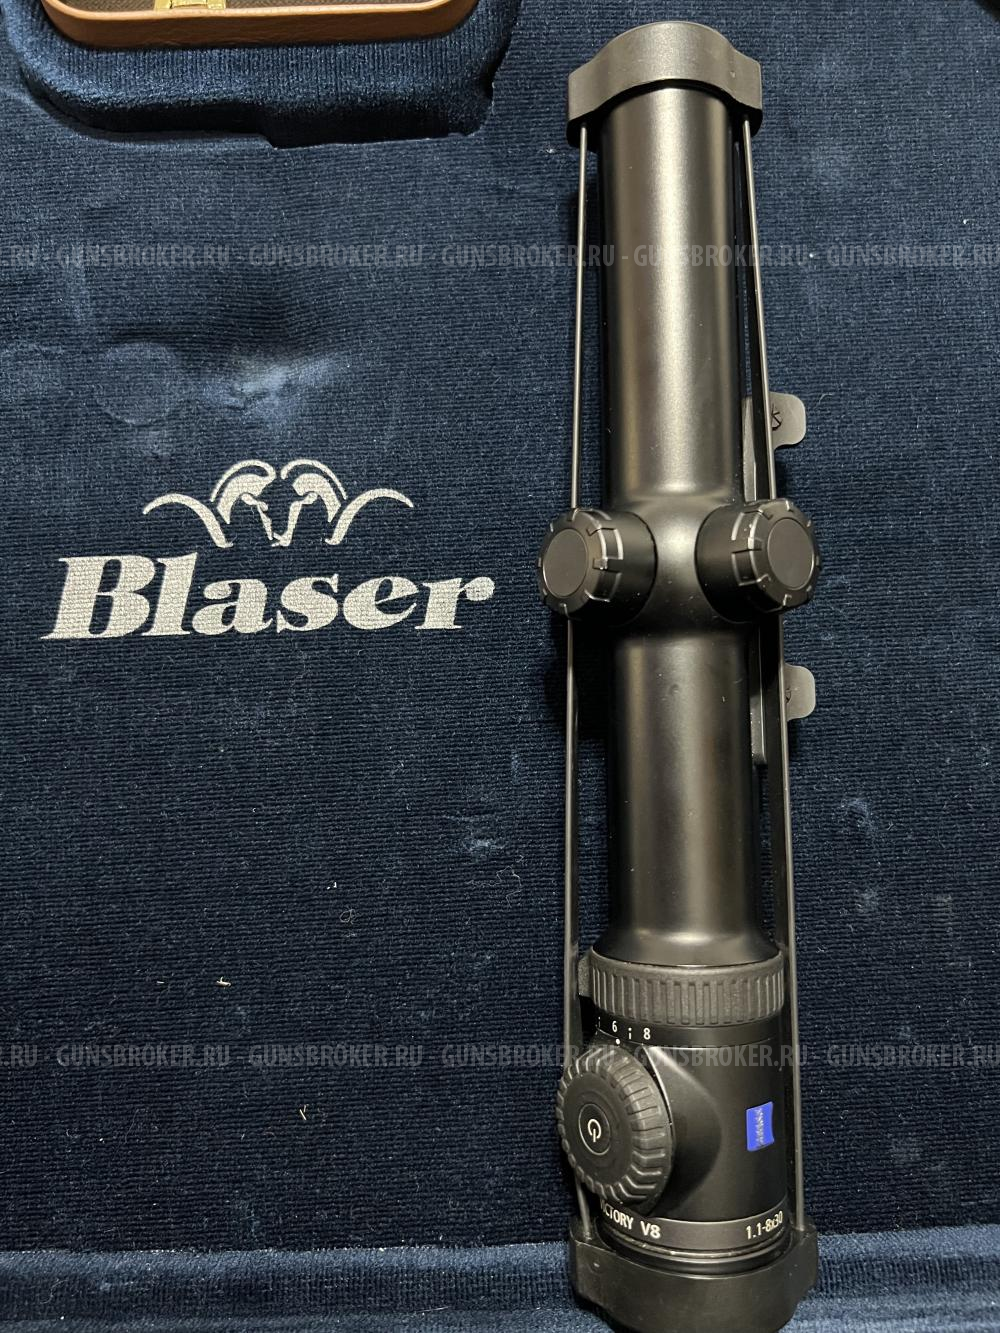 Blaser R8 308 WIN, 223 rem + CARL ZEISS VICTORY V8 RS 1.1-8X30 + Dedal-460 DK3